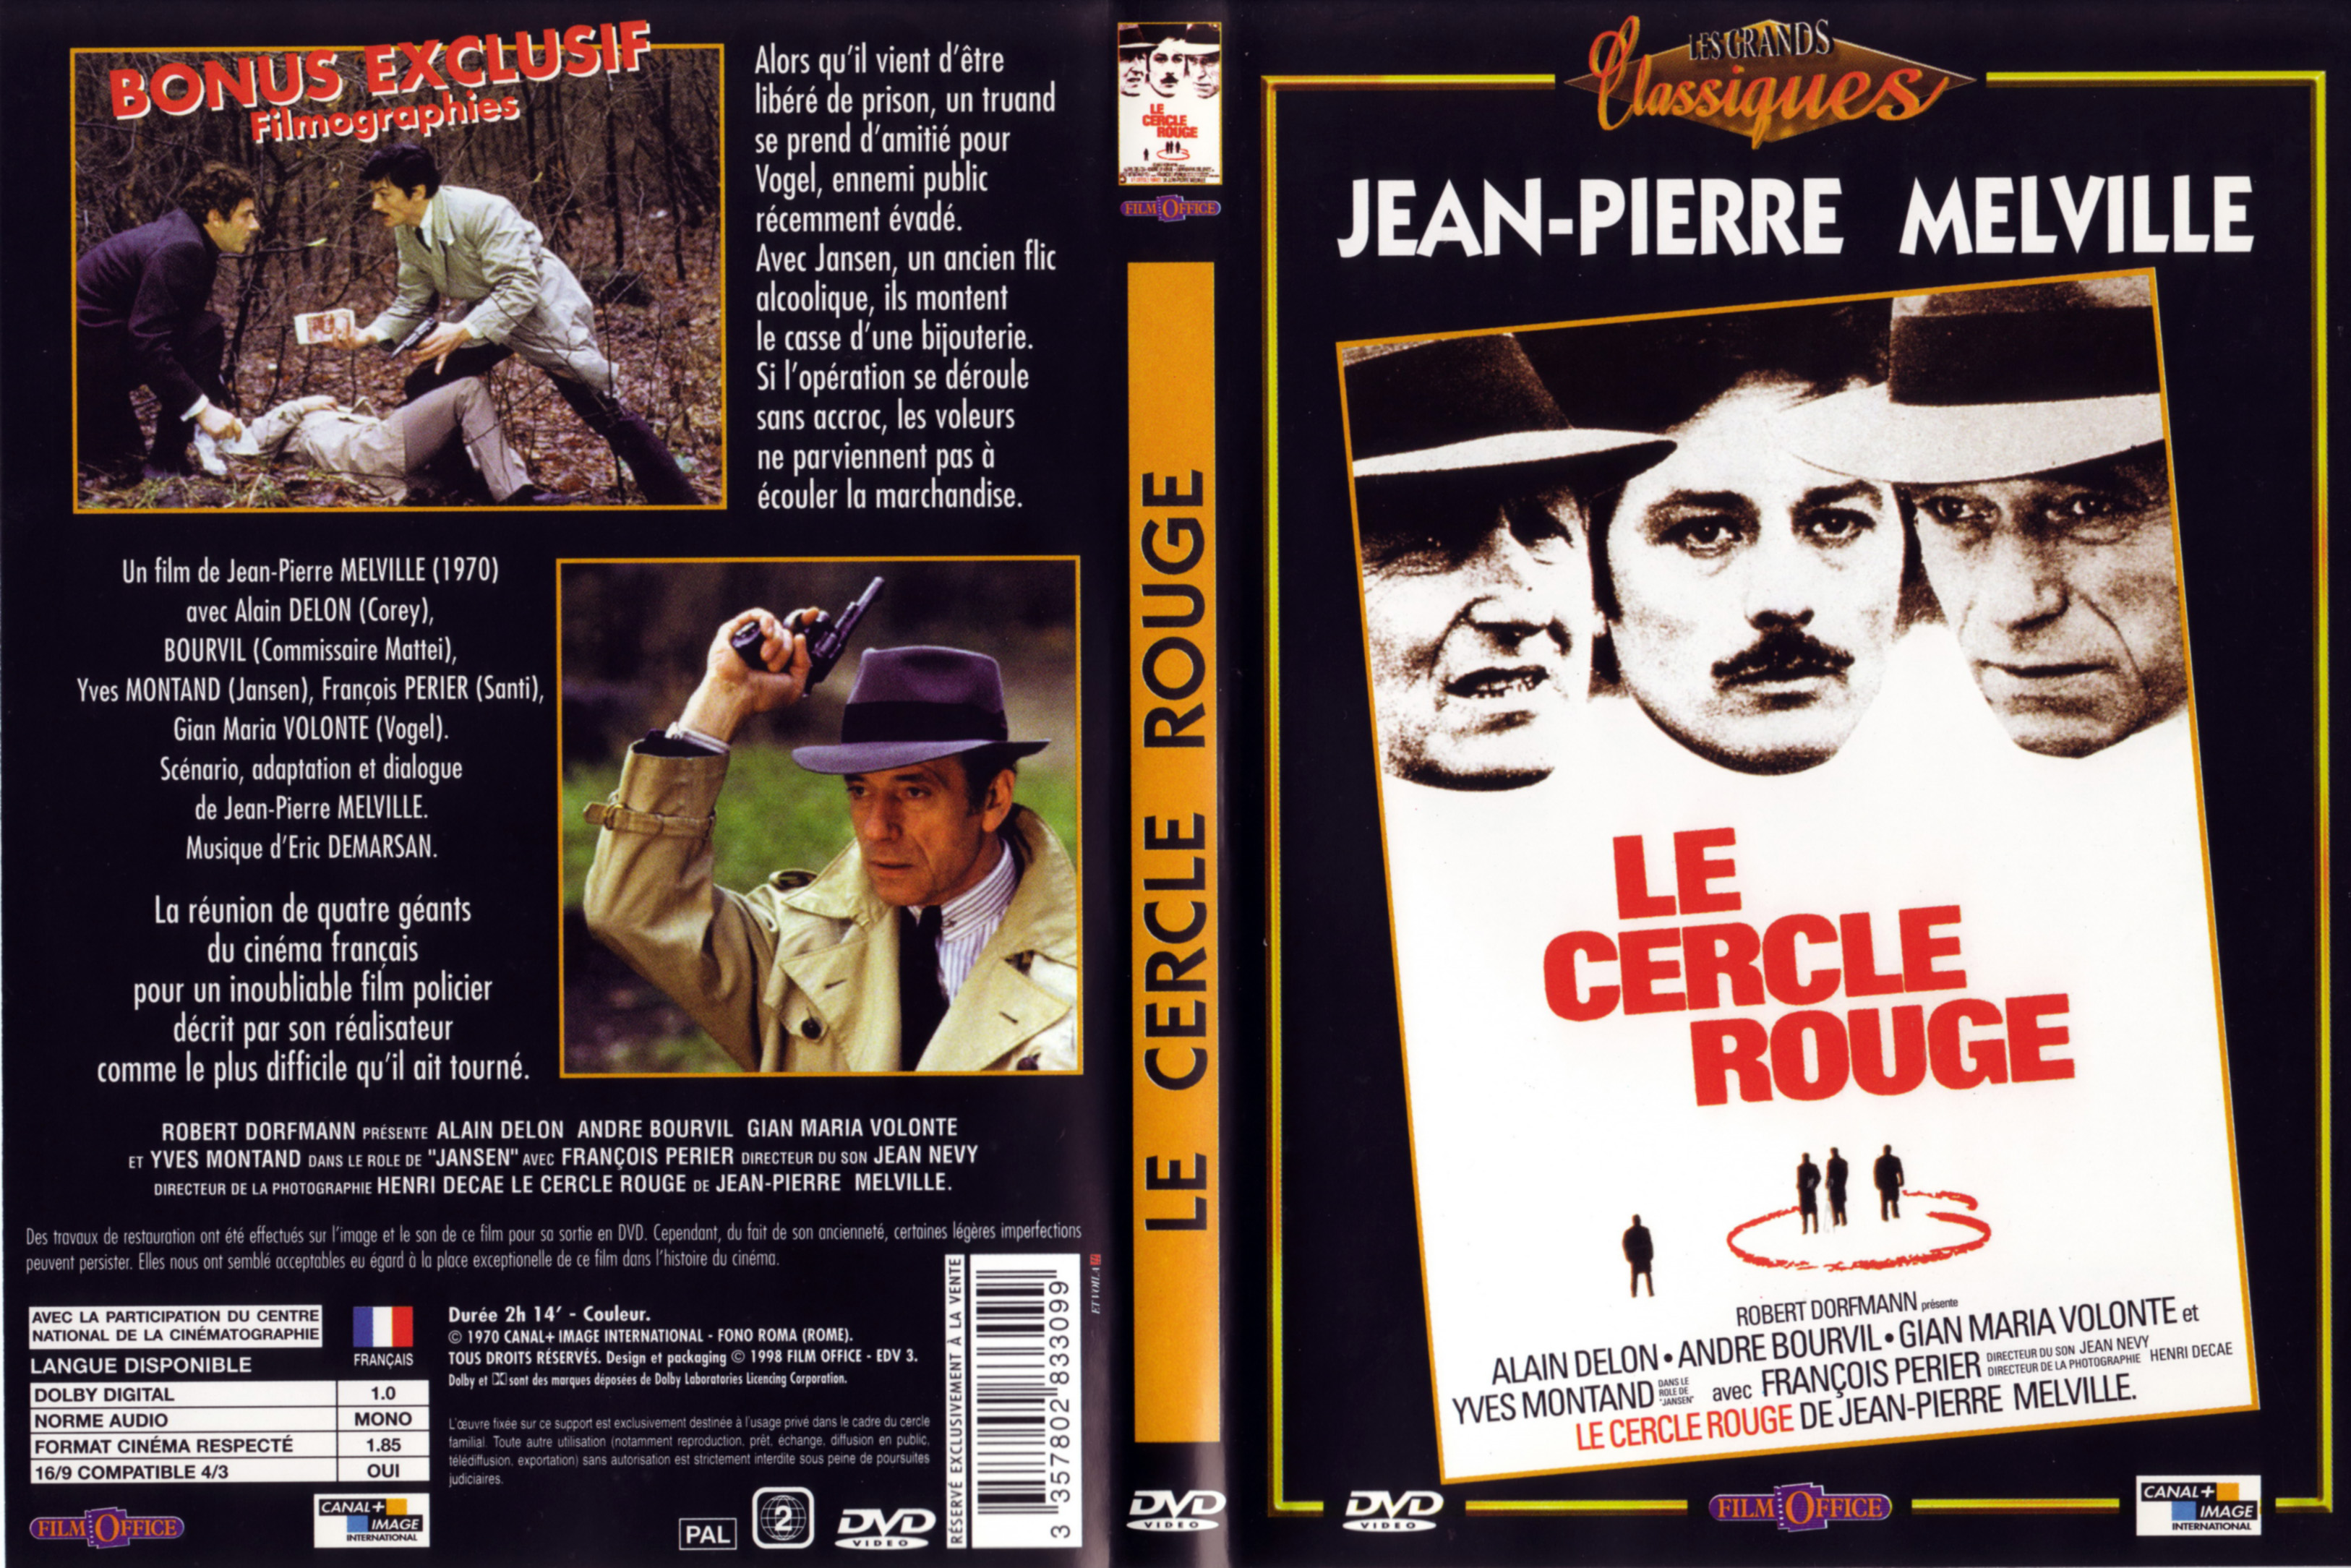 Jaquette DVD Le cercle rouge v3